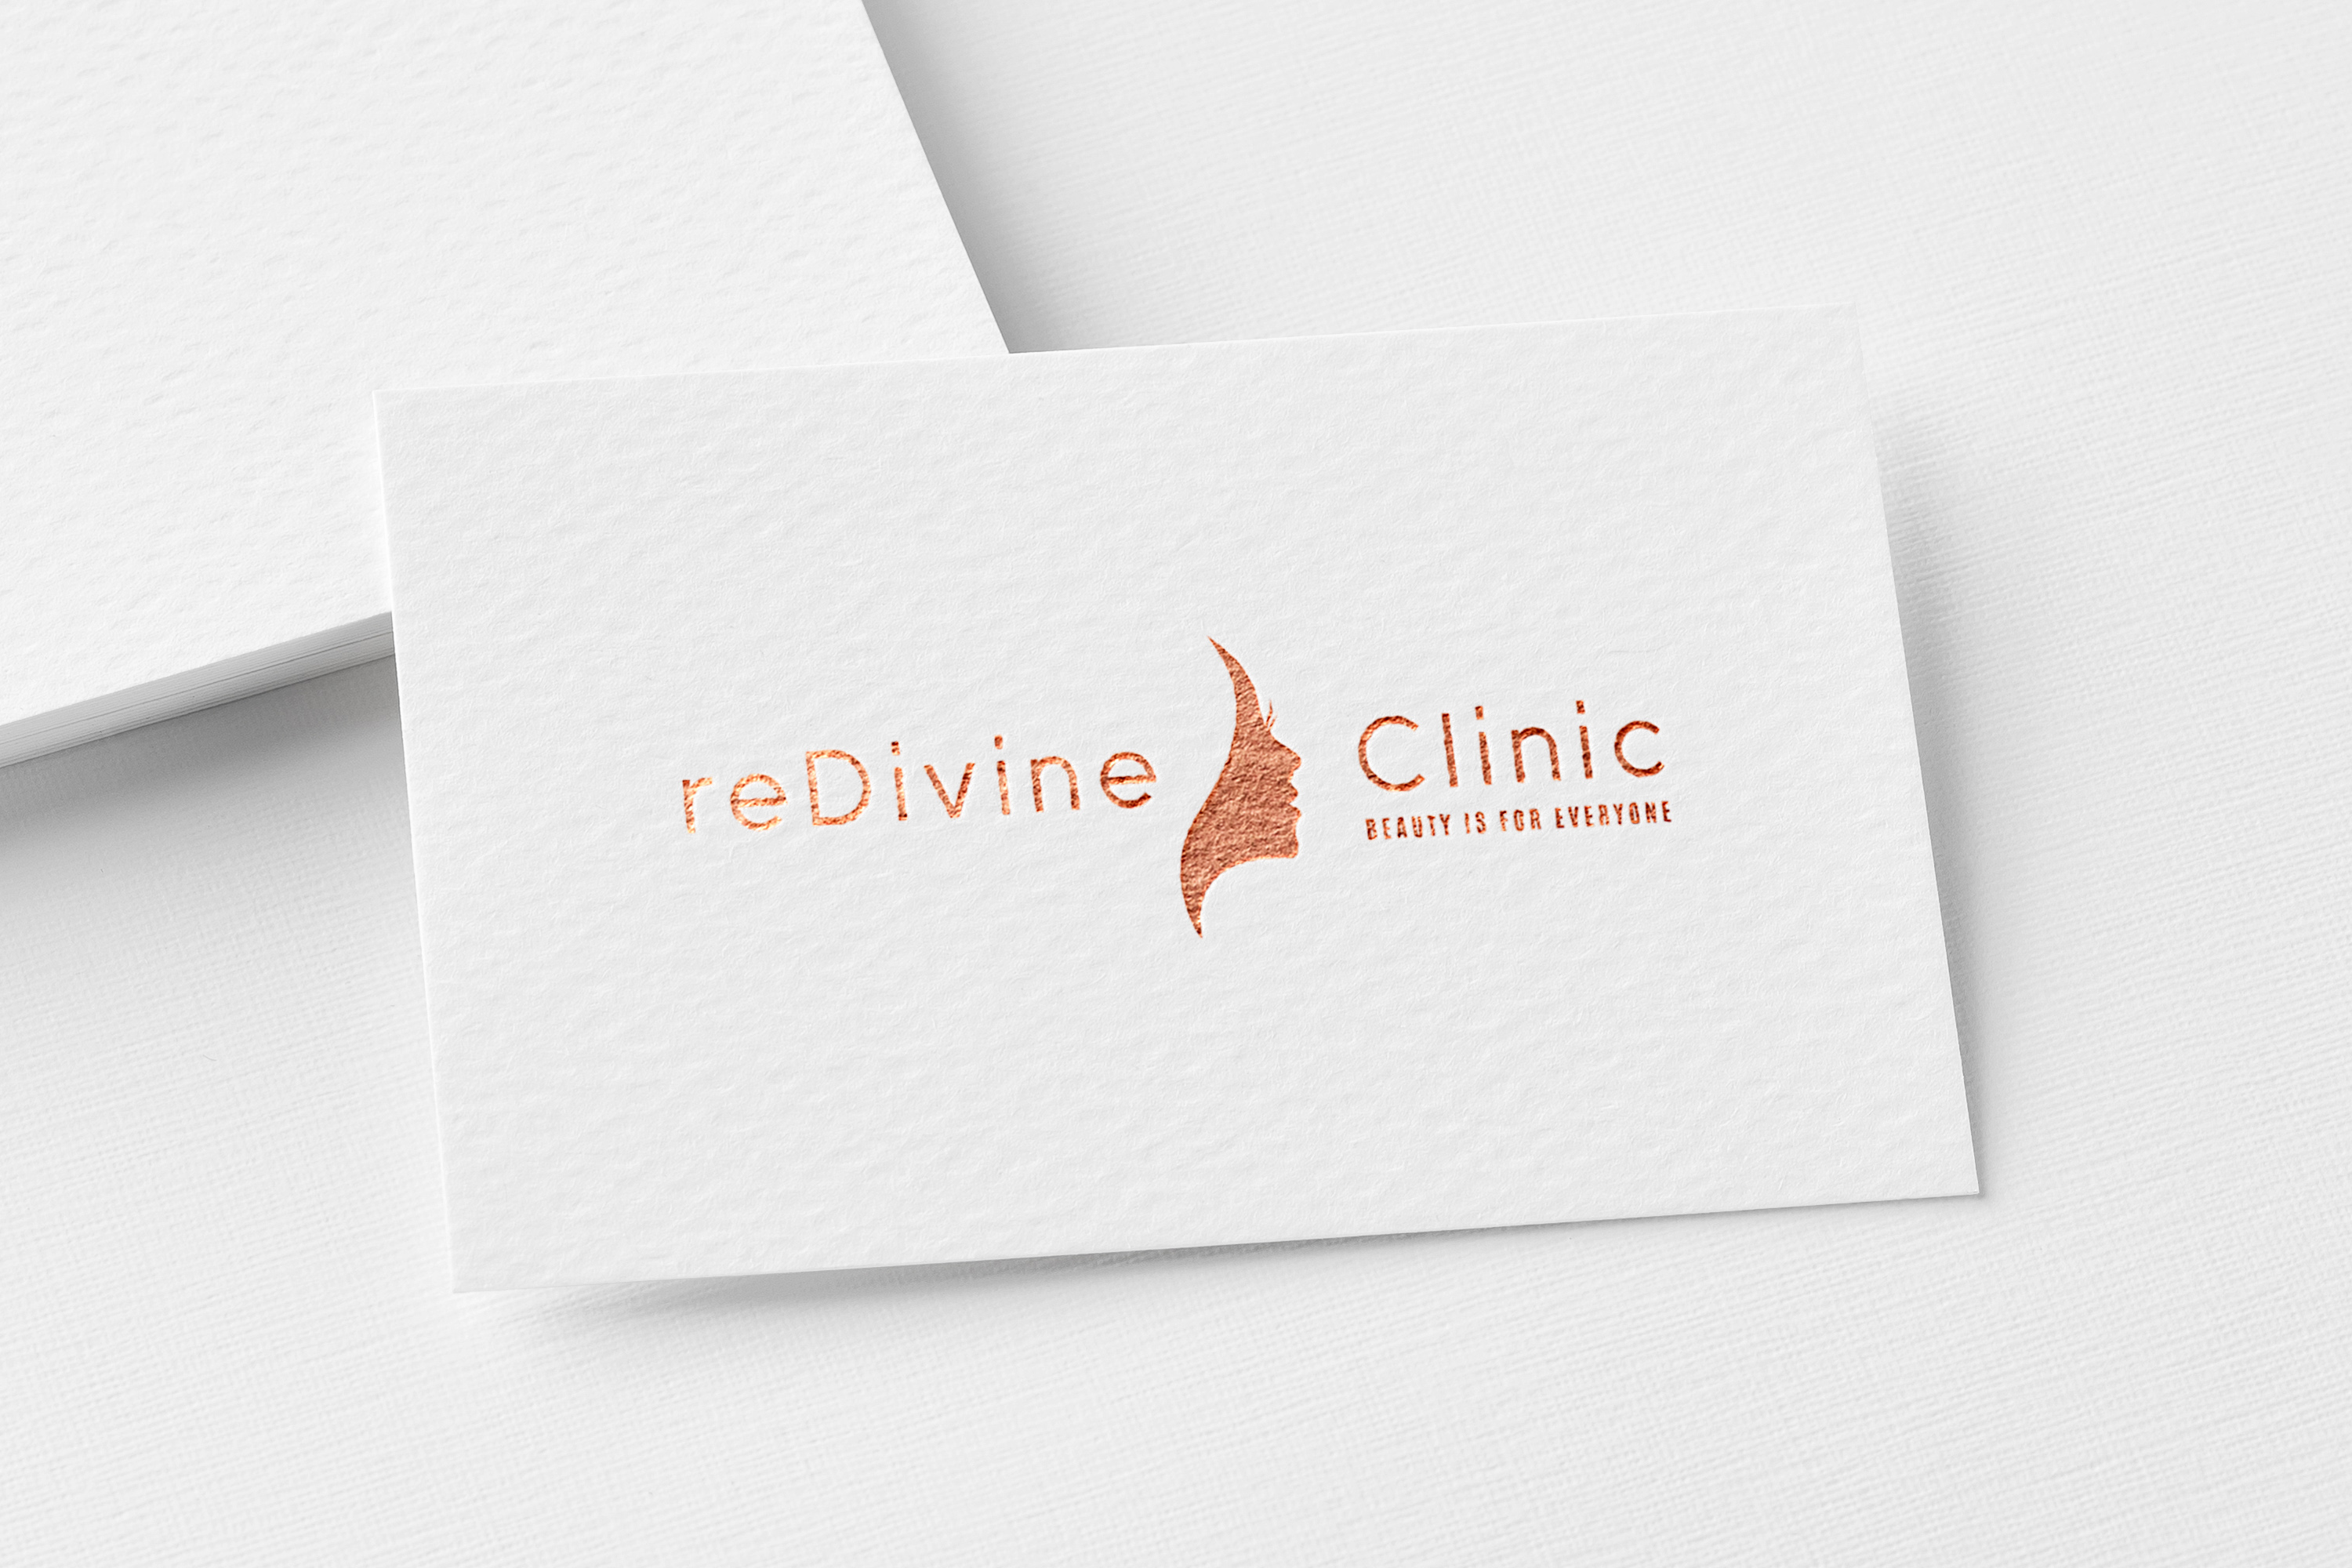 reDivine Clinic